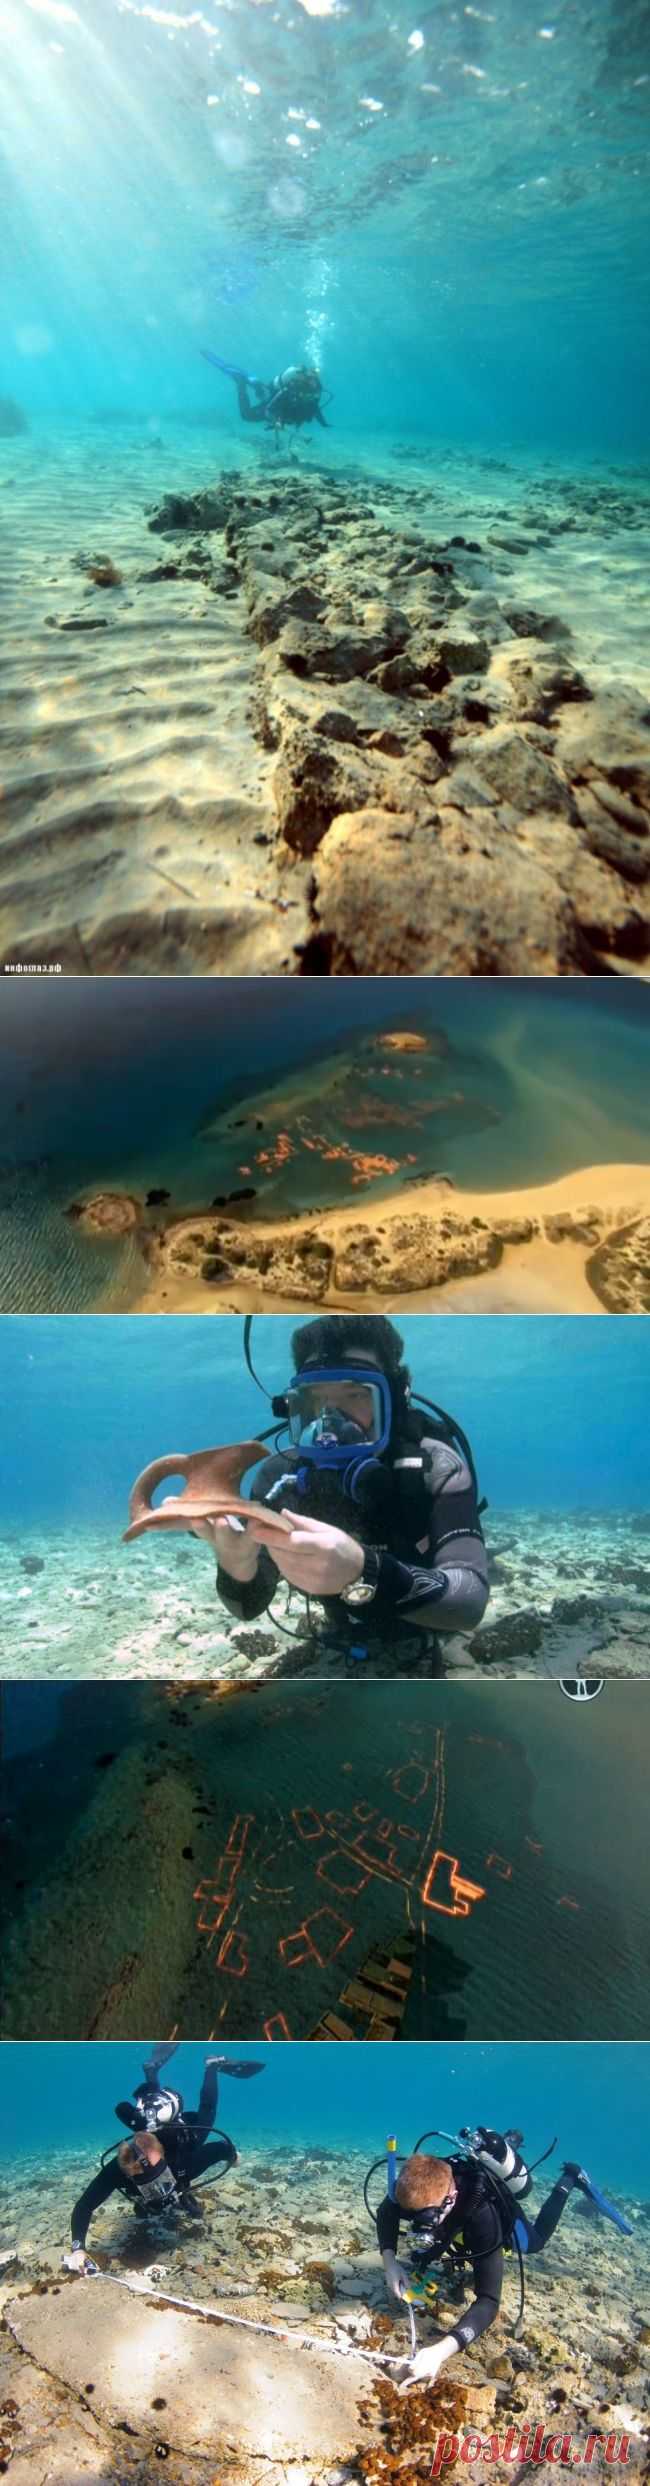 Древний город, обнаруженный под водой — Наука и жизнь